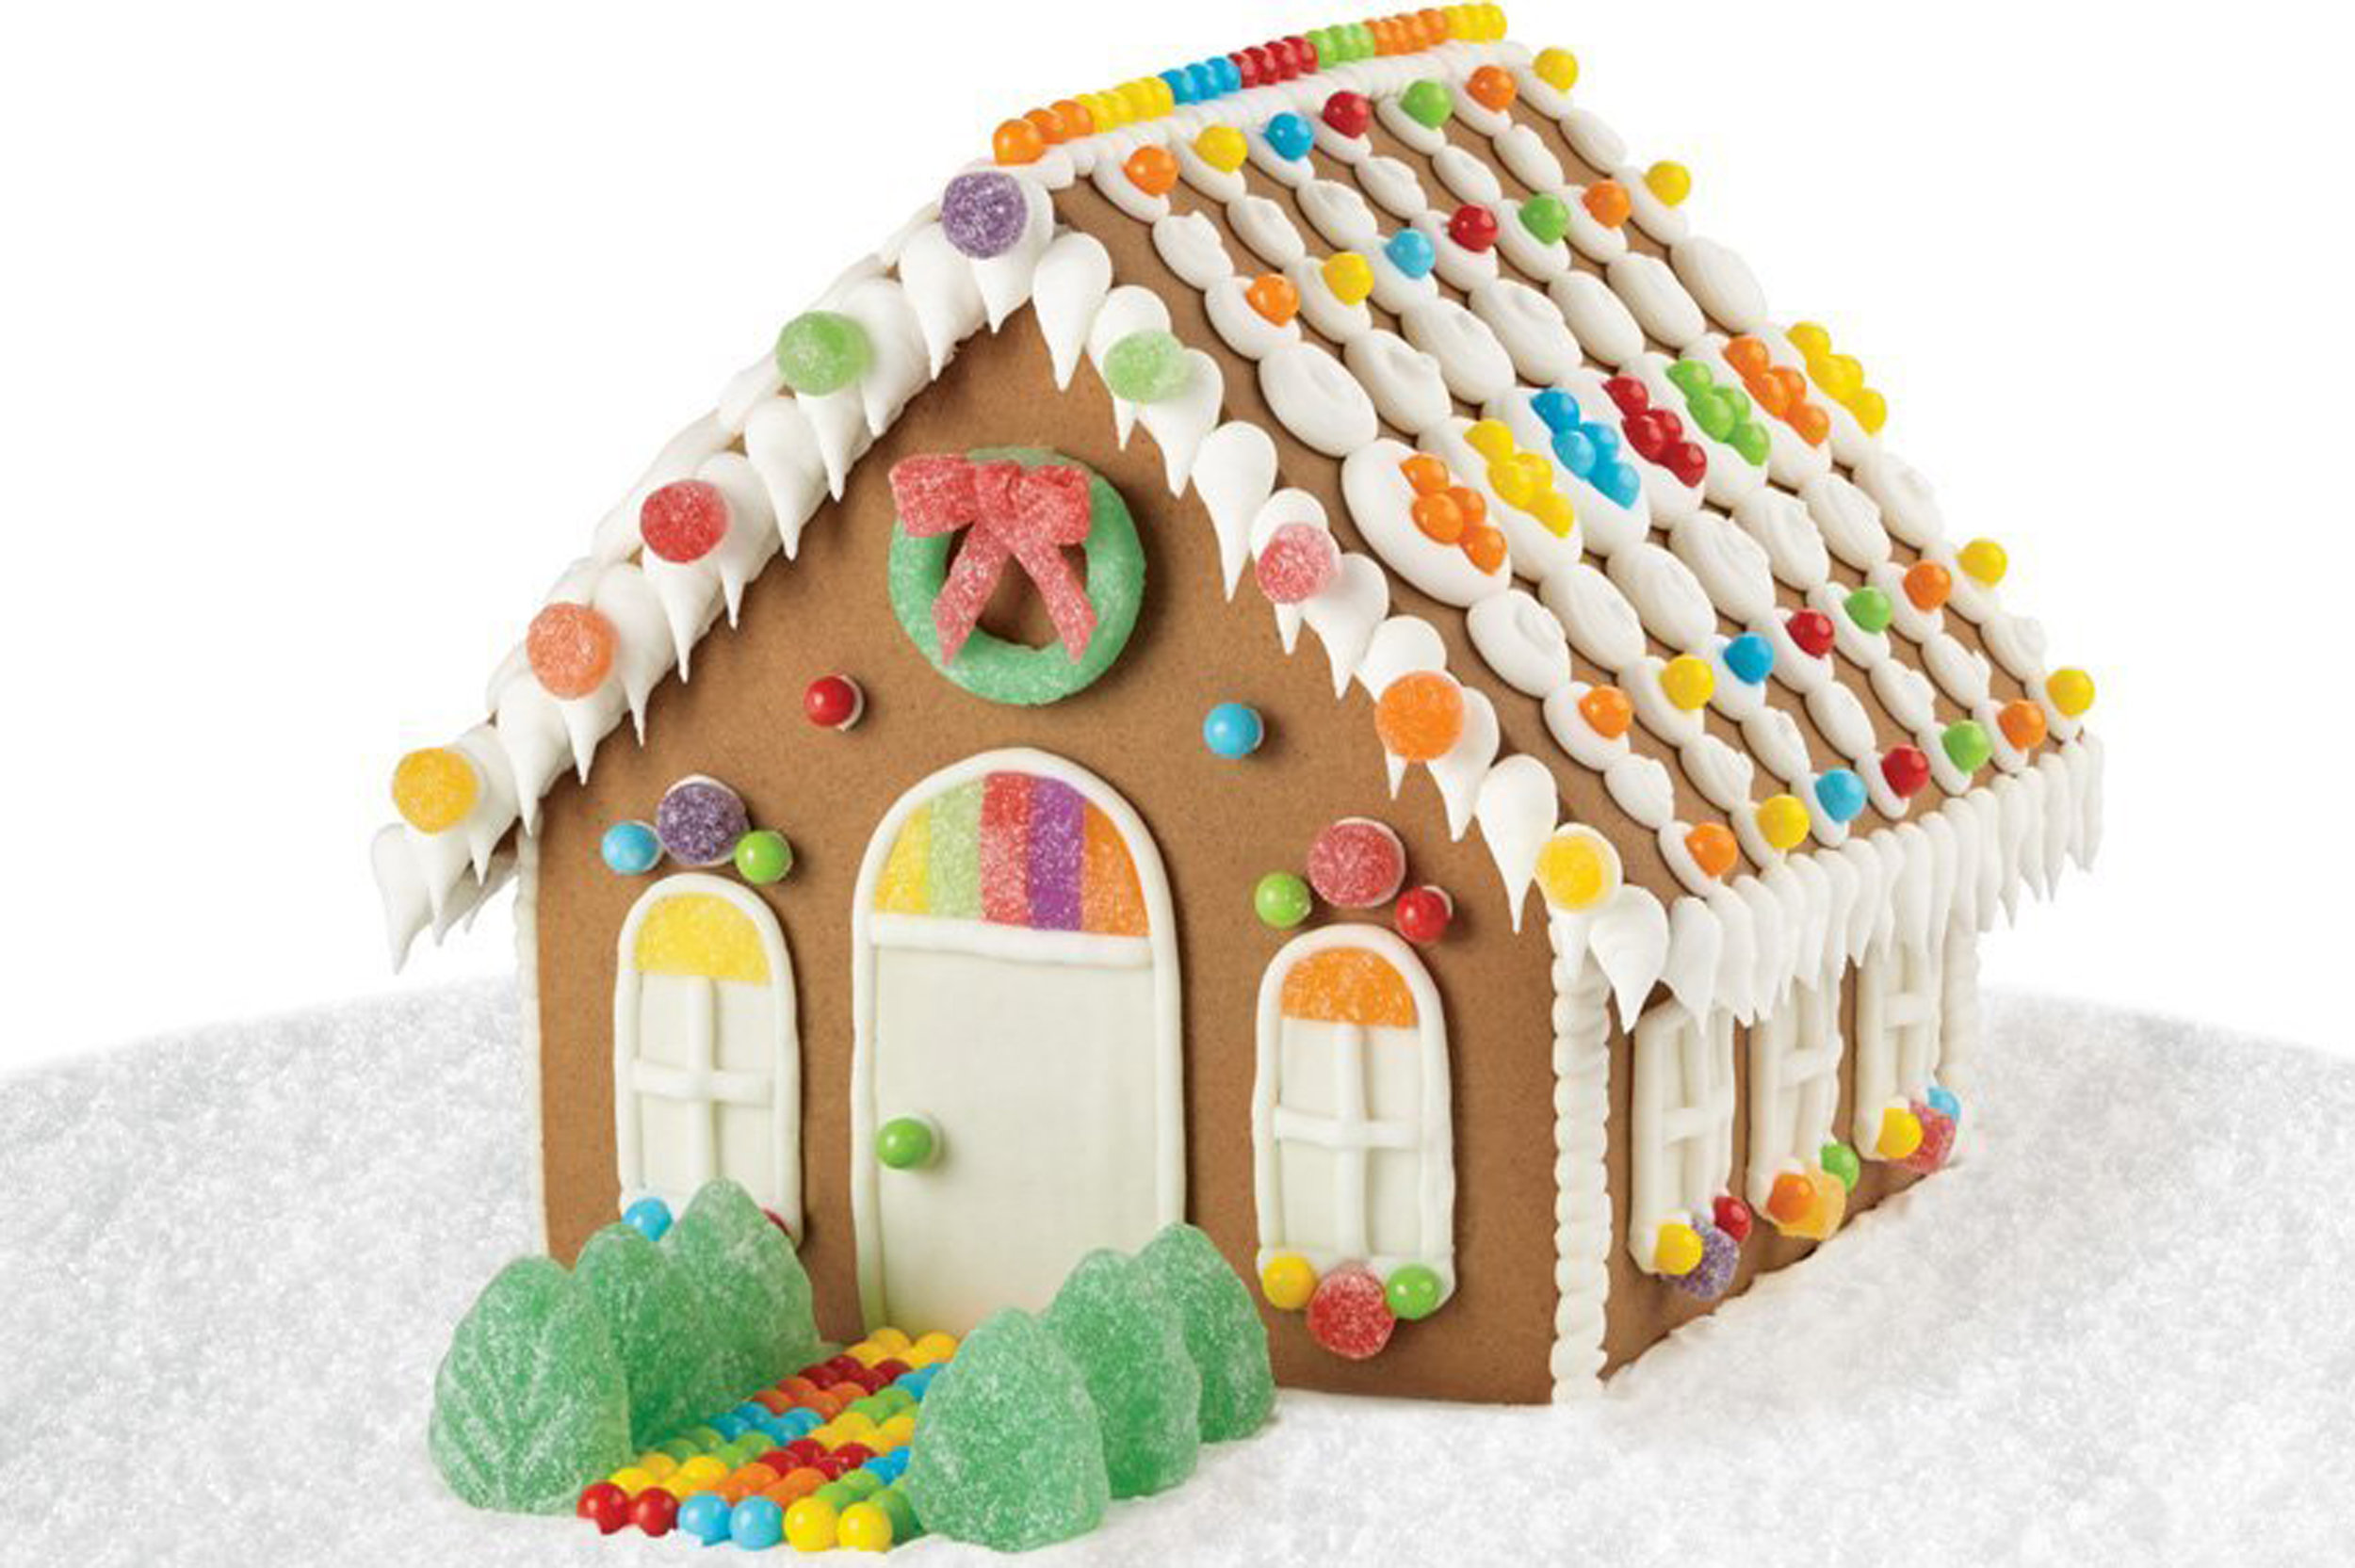 Gingerbread-house-class2.jpg